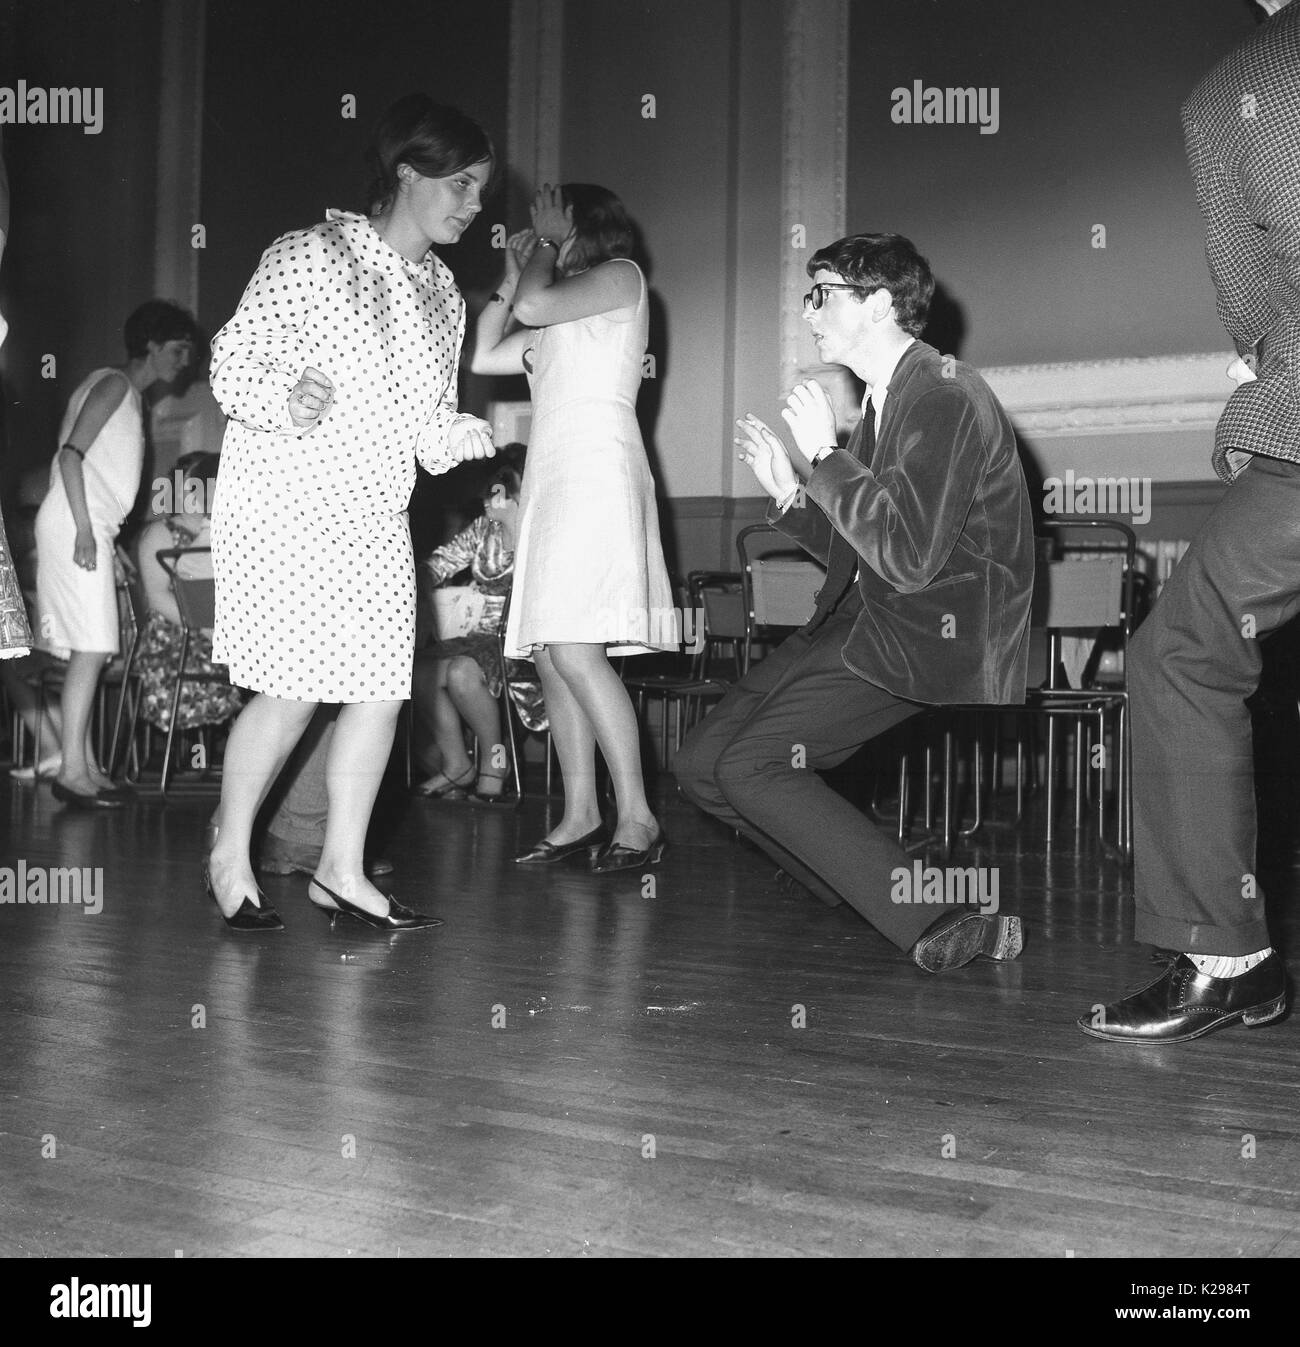 1964, historial, England, UK, der neue Tanzverrückte, Bild zeigt einen Jungen und ein Mädchen, die solo zu den neuen Klängen der Ära tanzen, wobei der Junge wirklich groovend ist, vielleicht inspiriert vom Hit-Sound, 'The Twist'. Stockfoto